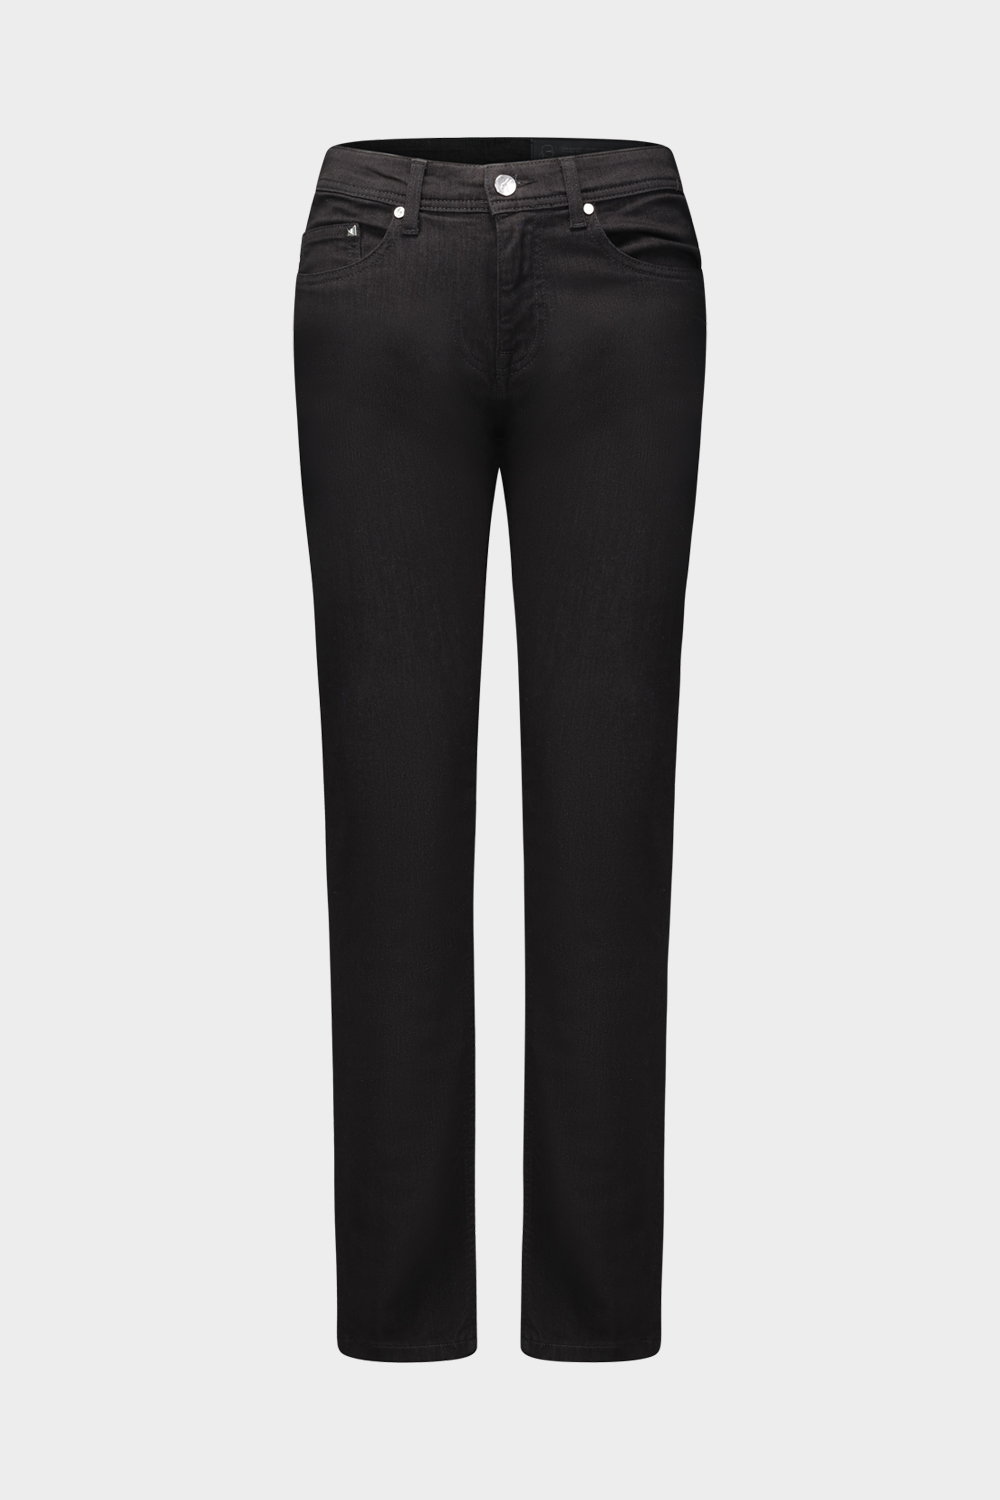 מכנסי ג'ינס לגברים בצבע שחור